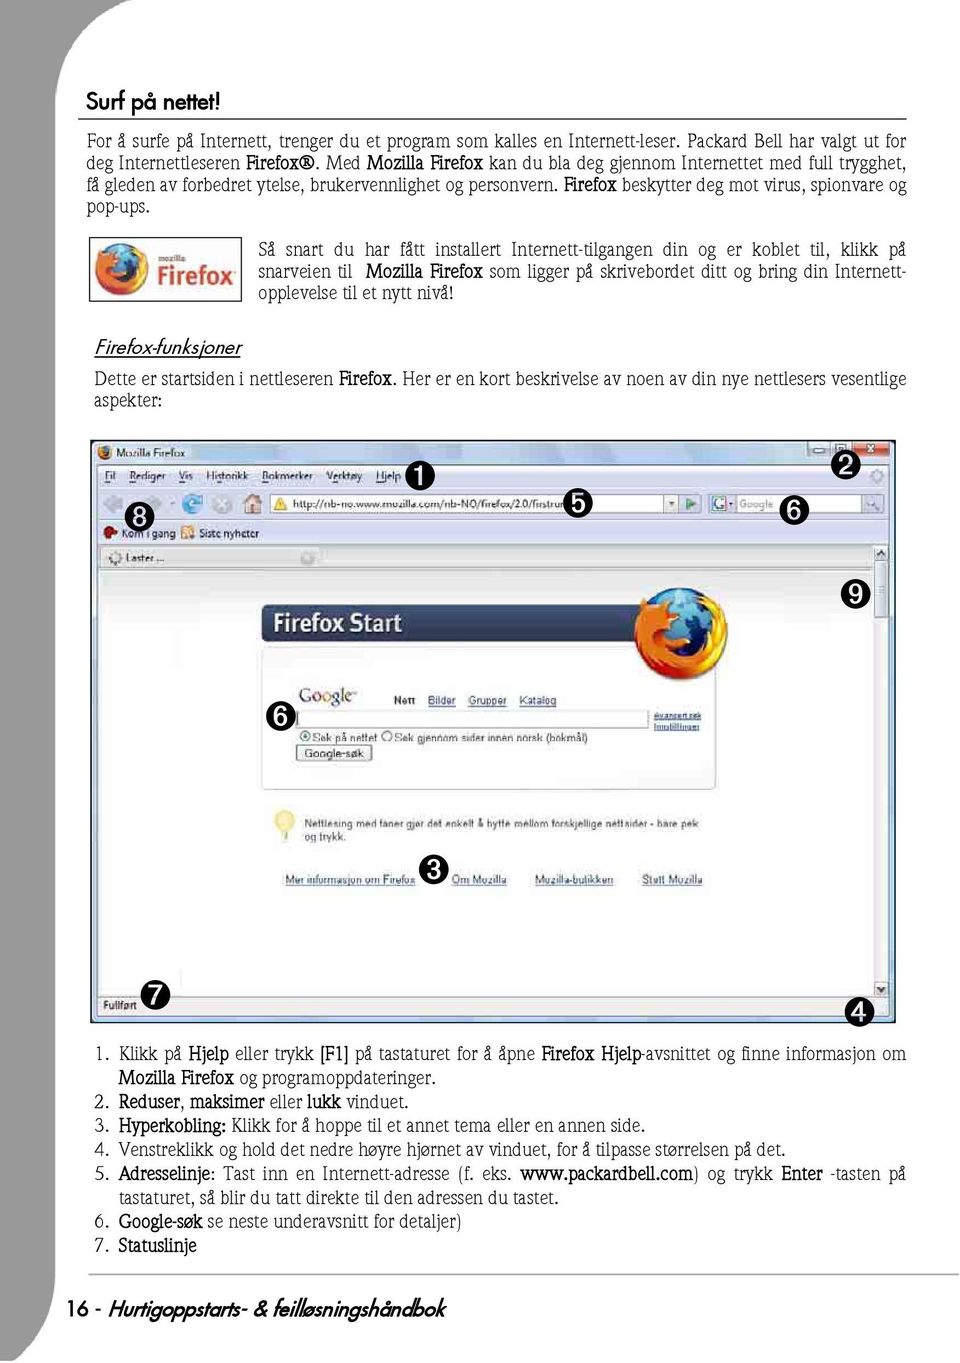 Så snart du har fått installert Internett-tilgangen din og er koblet til, klikk på snarveien til Mozilla Firefox som ligger på skrivebordet ditt og bring din Internettopplevelse til et nytt nivå!